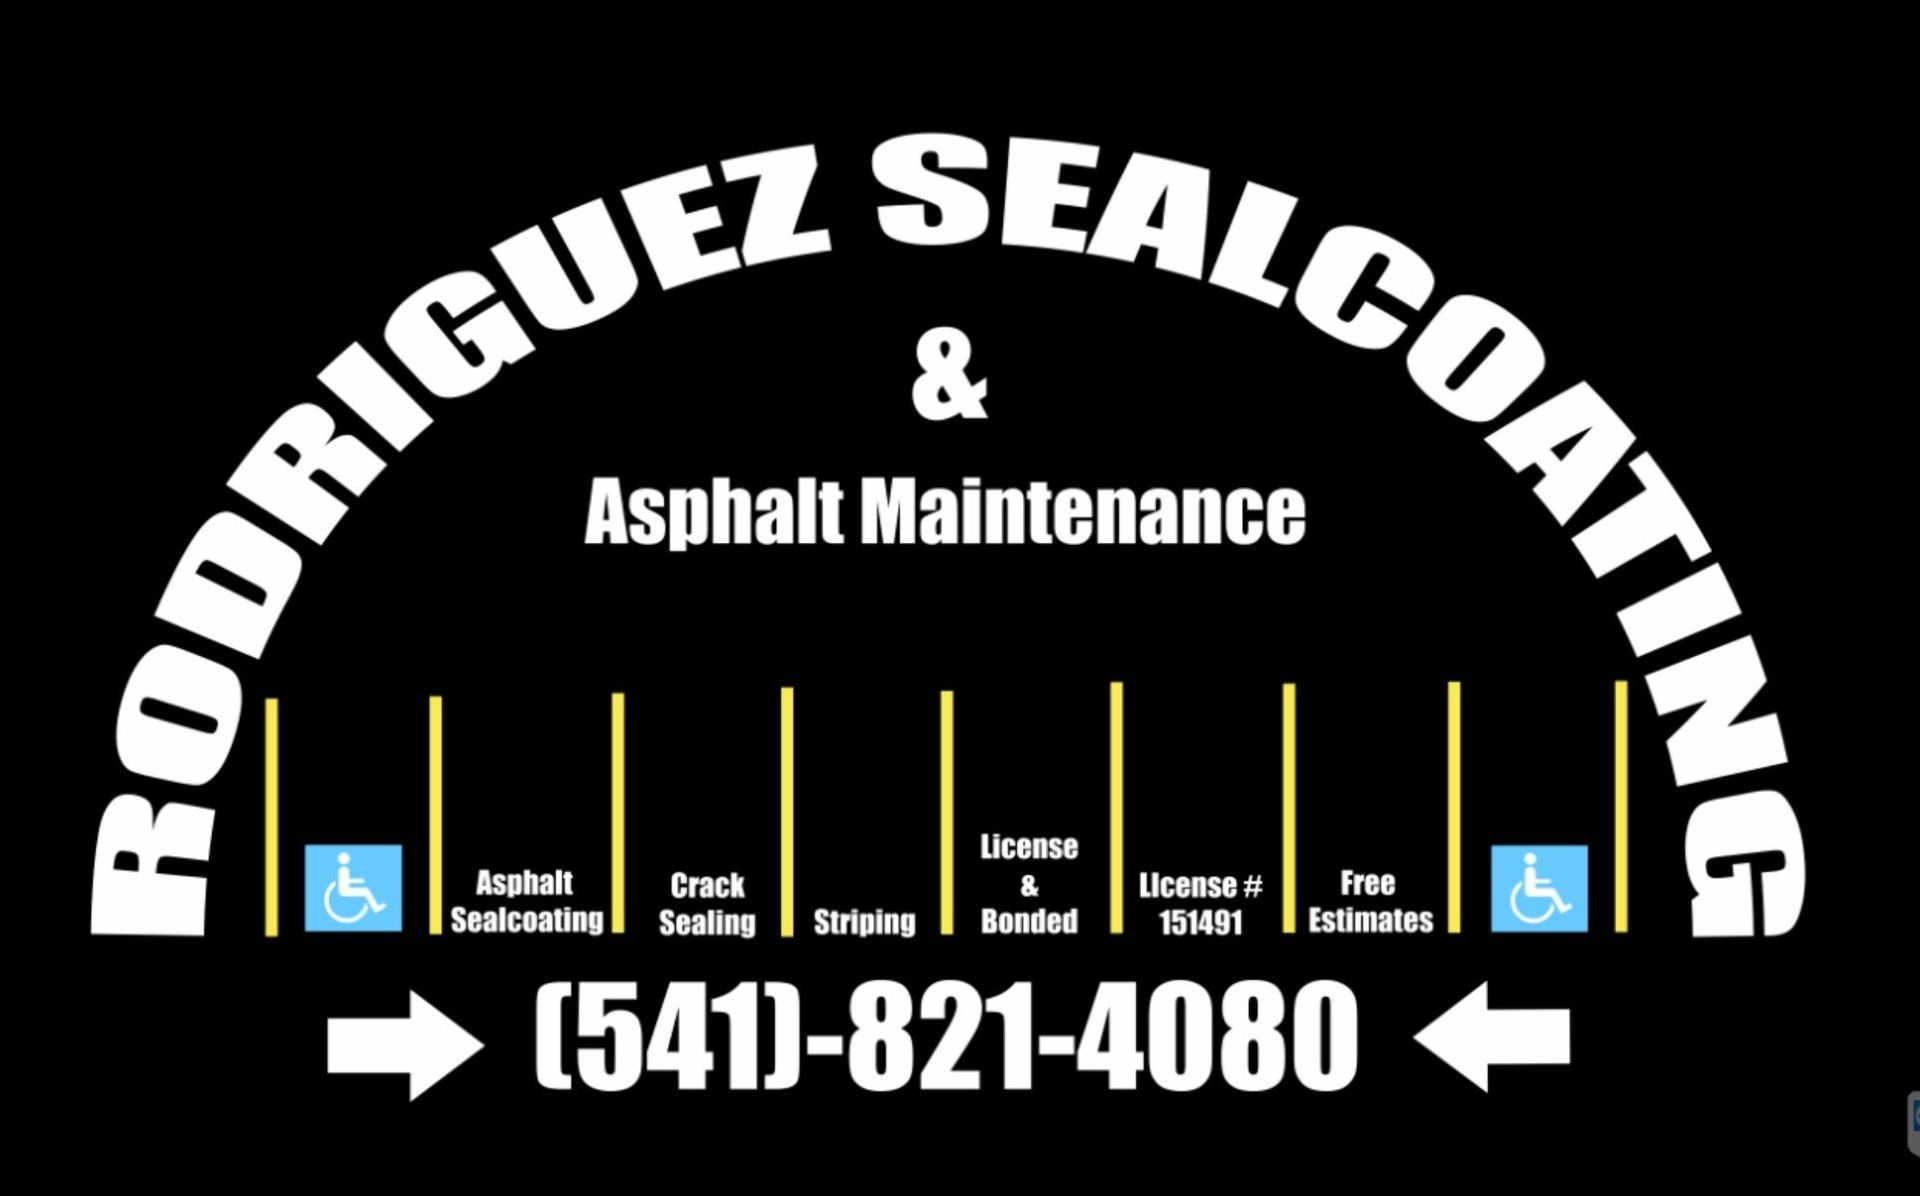 Rodriguez Sealcoating & Asphalt Maintenance - logo